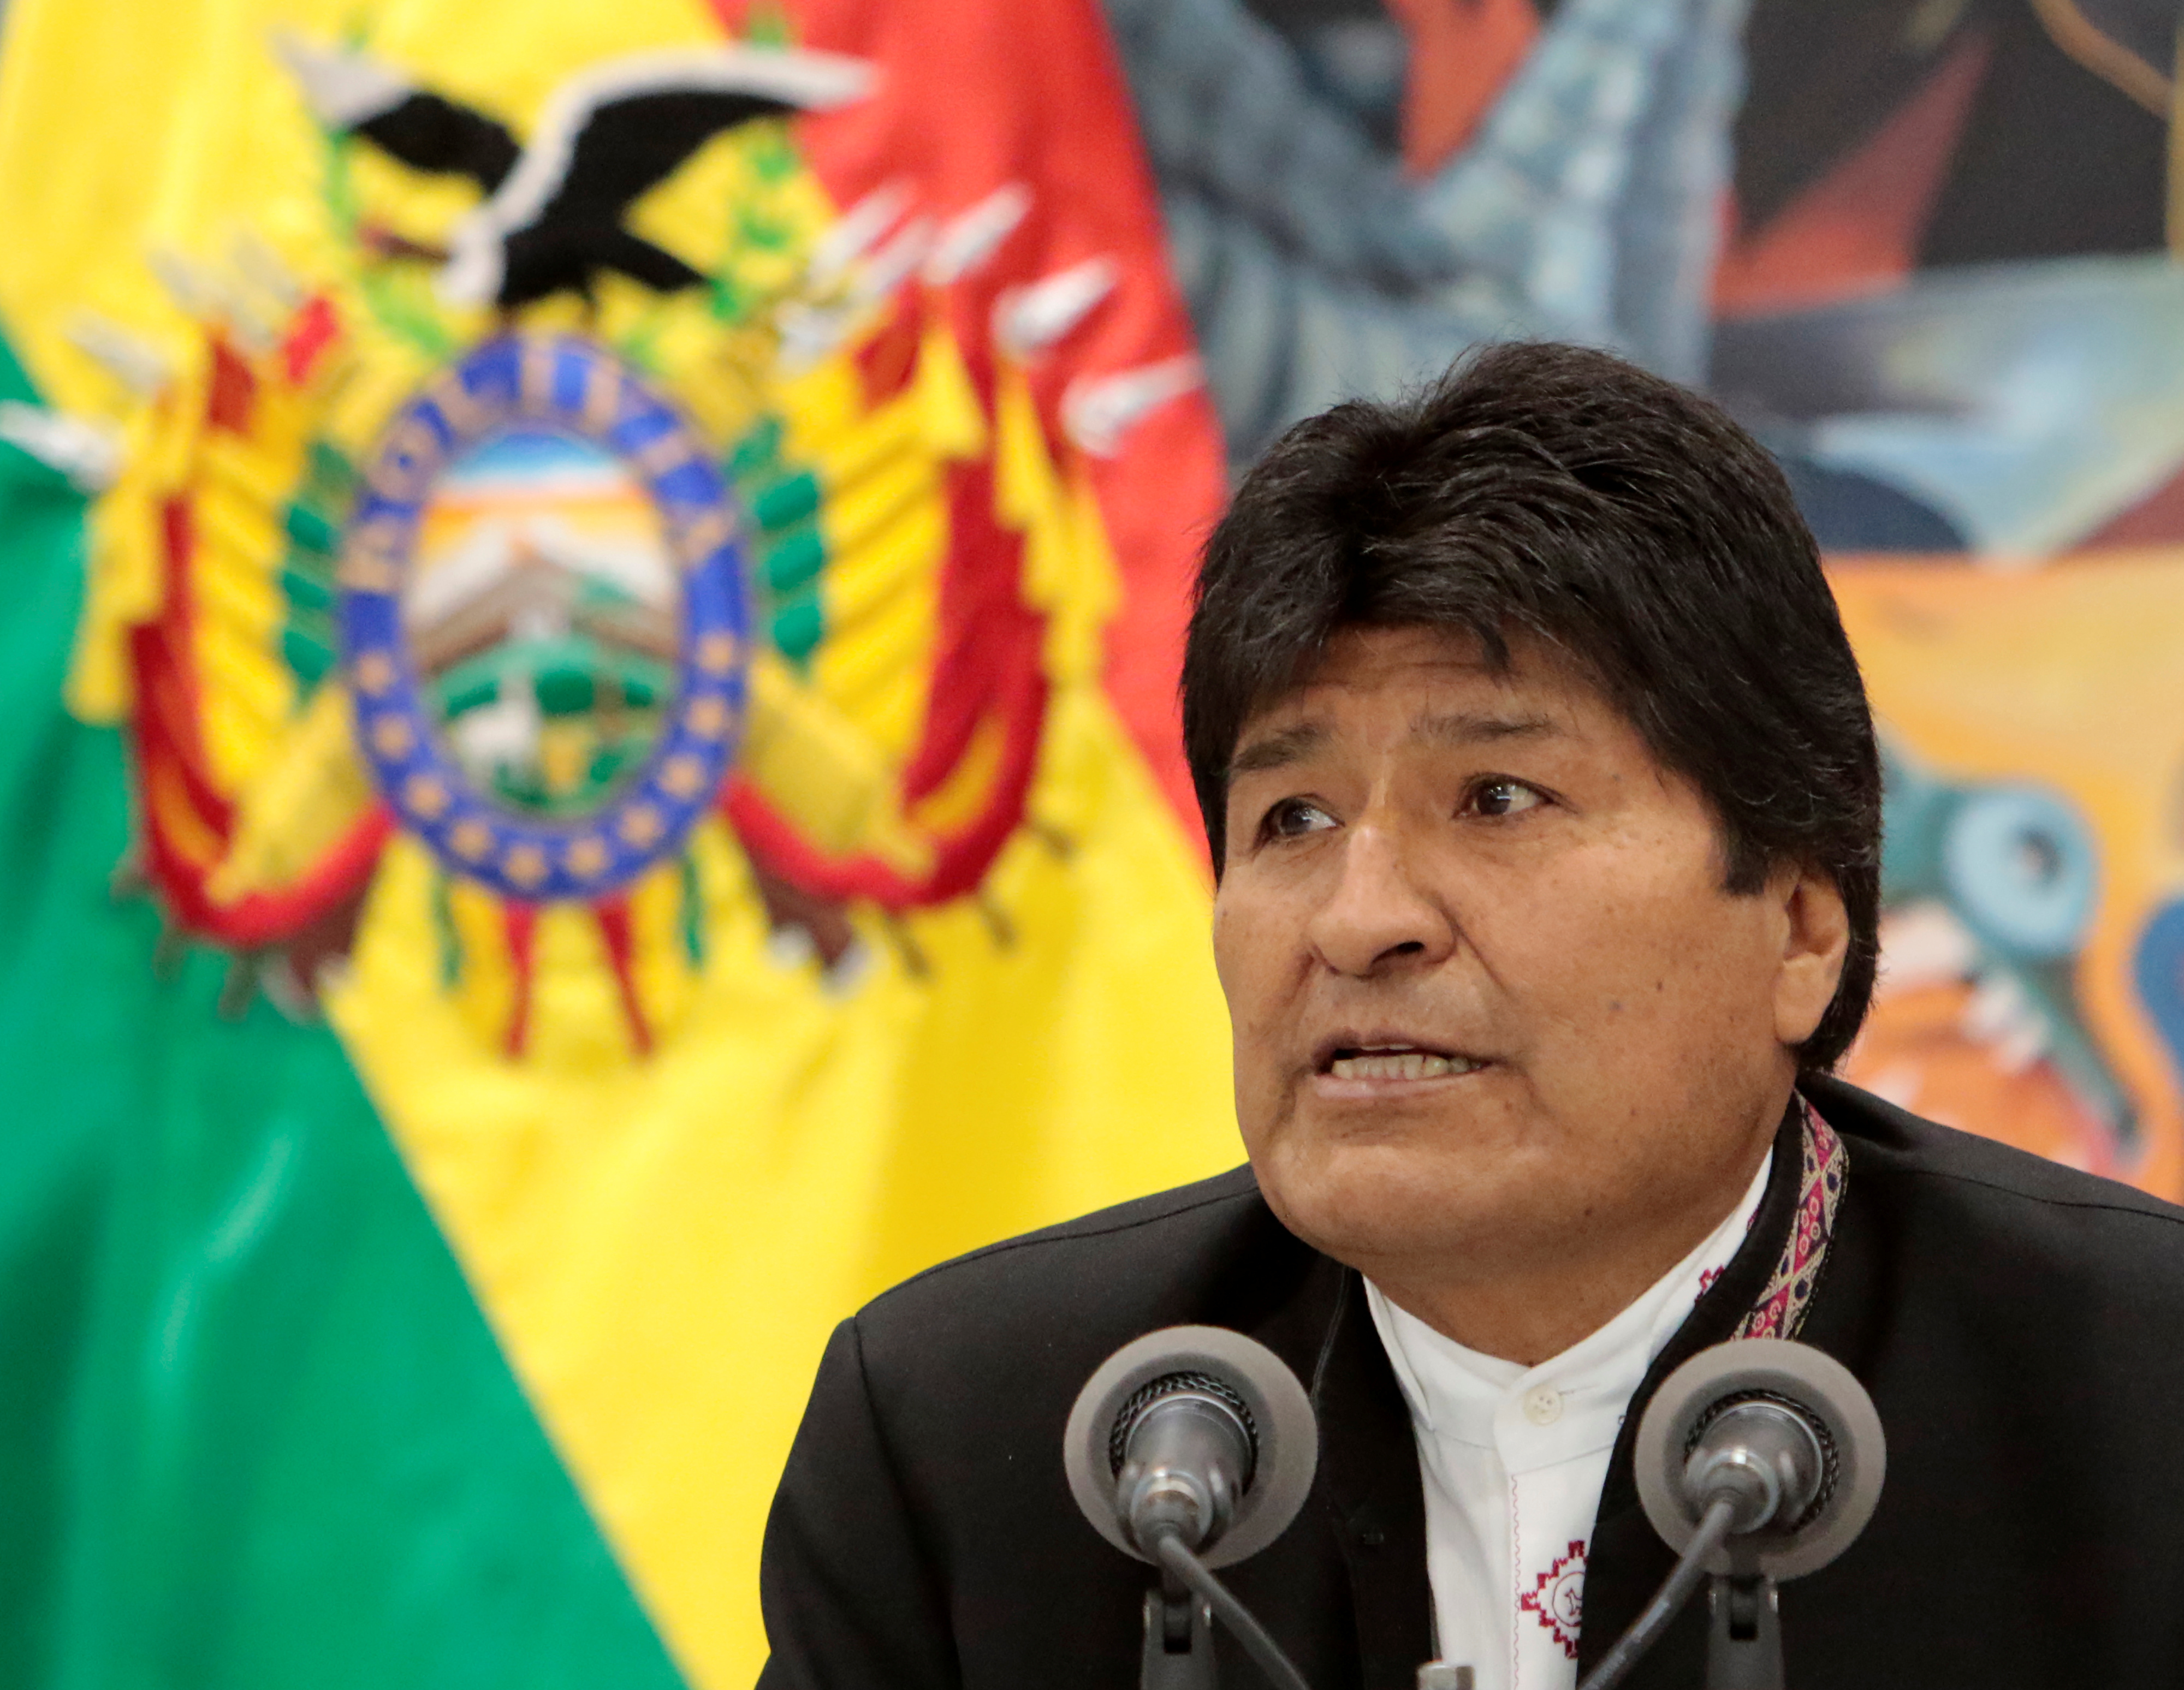 Lo que dijo Evo Morales sobre esconderse o escapar de Bolivia que seguro olvidó (FOTO)